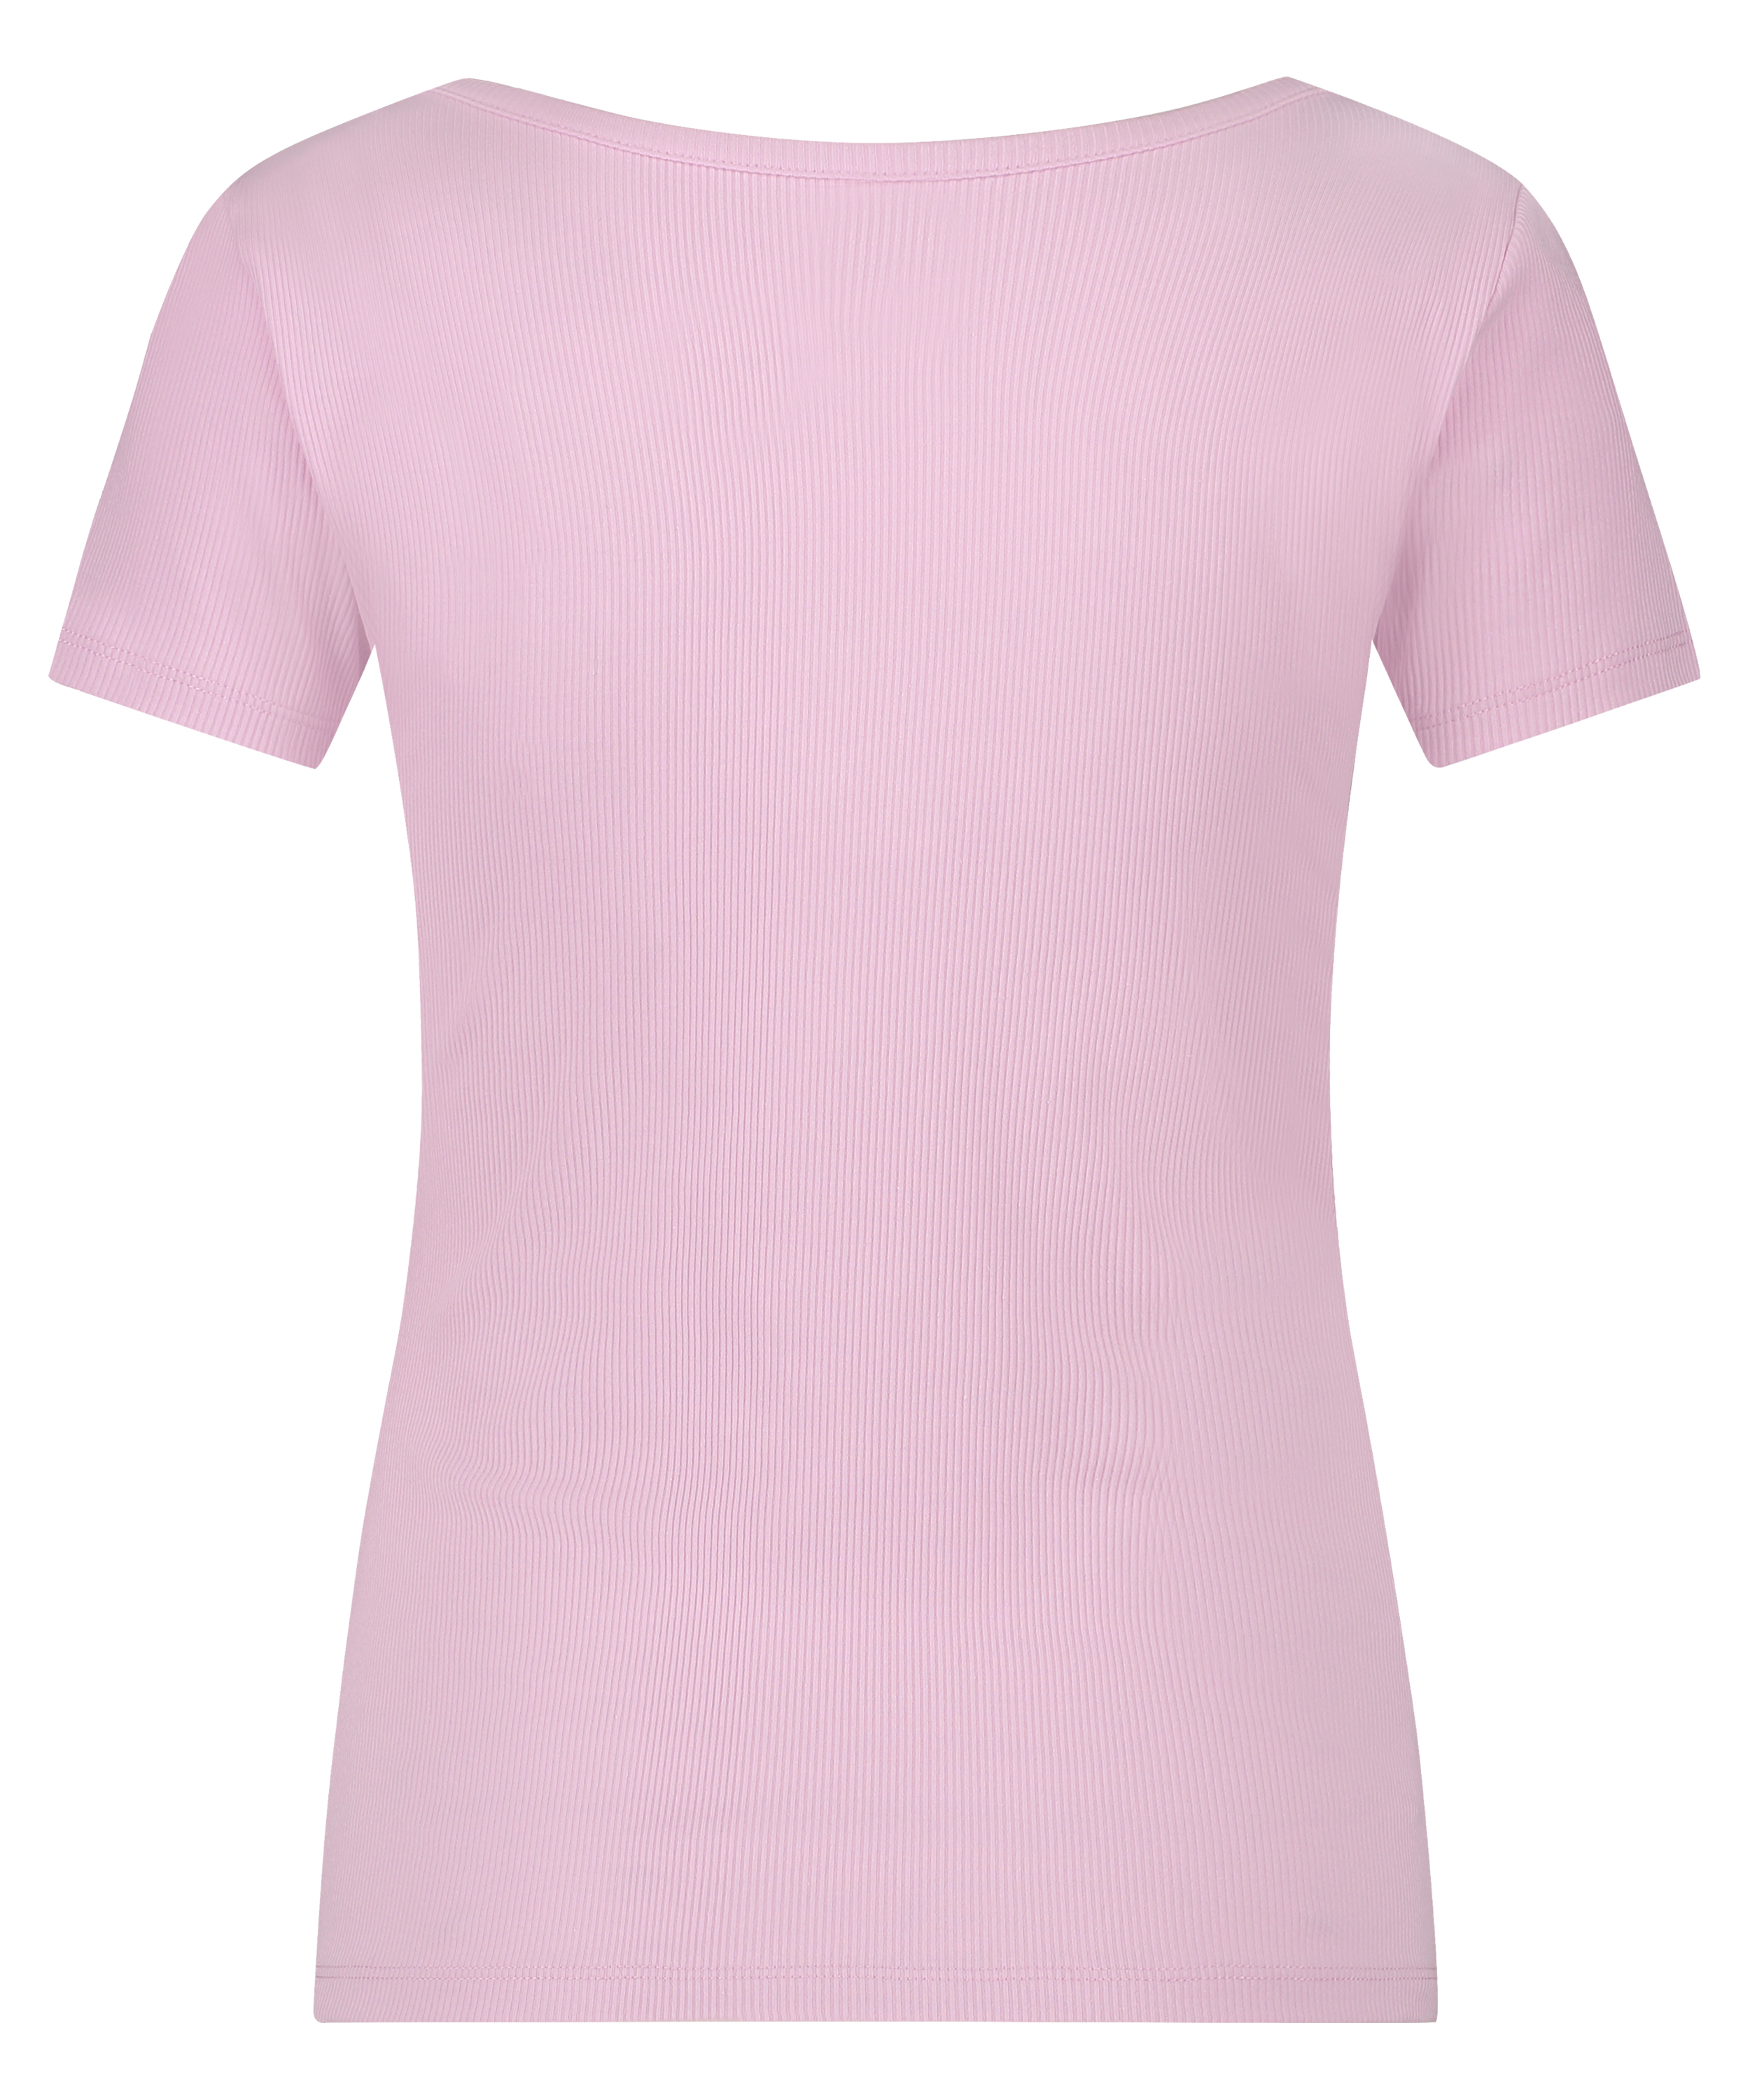 Rib Short-Sleeved Top, Pink, main